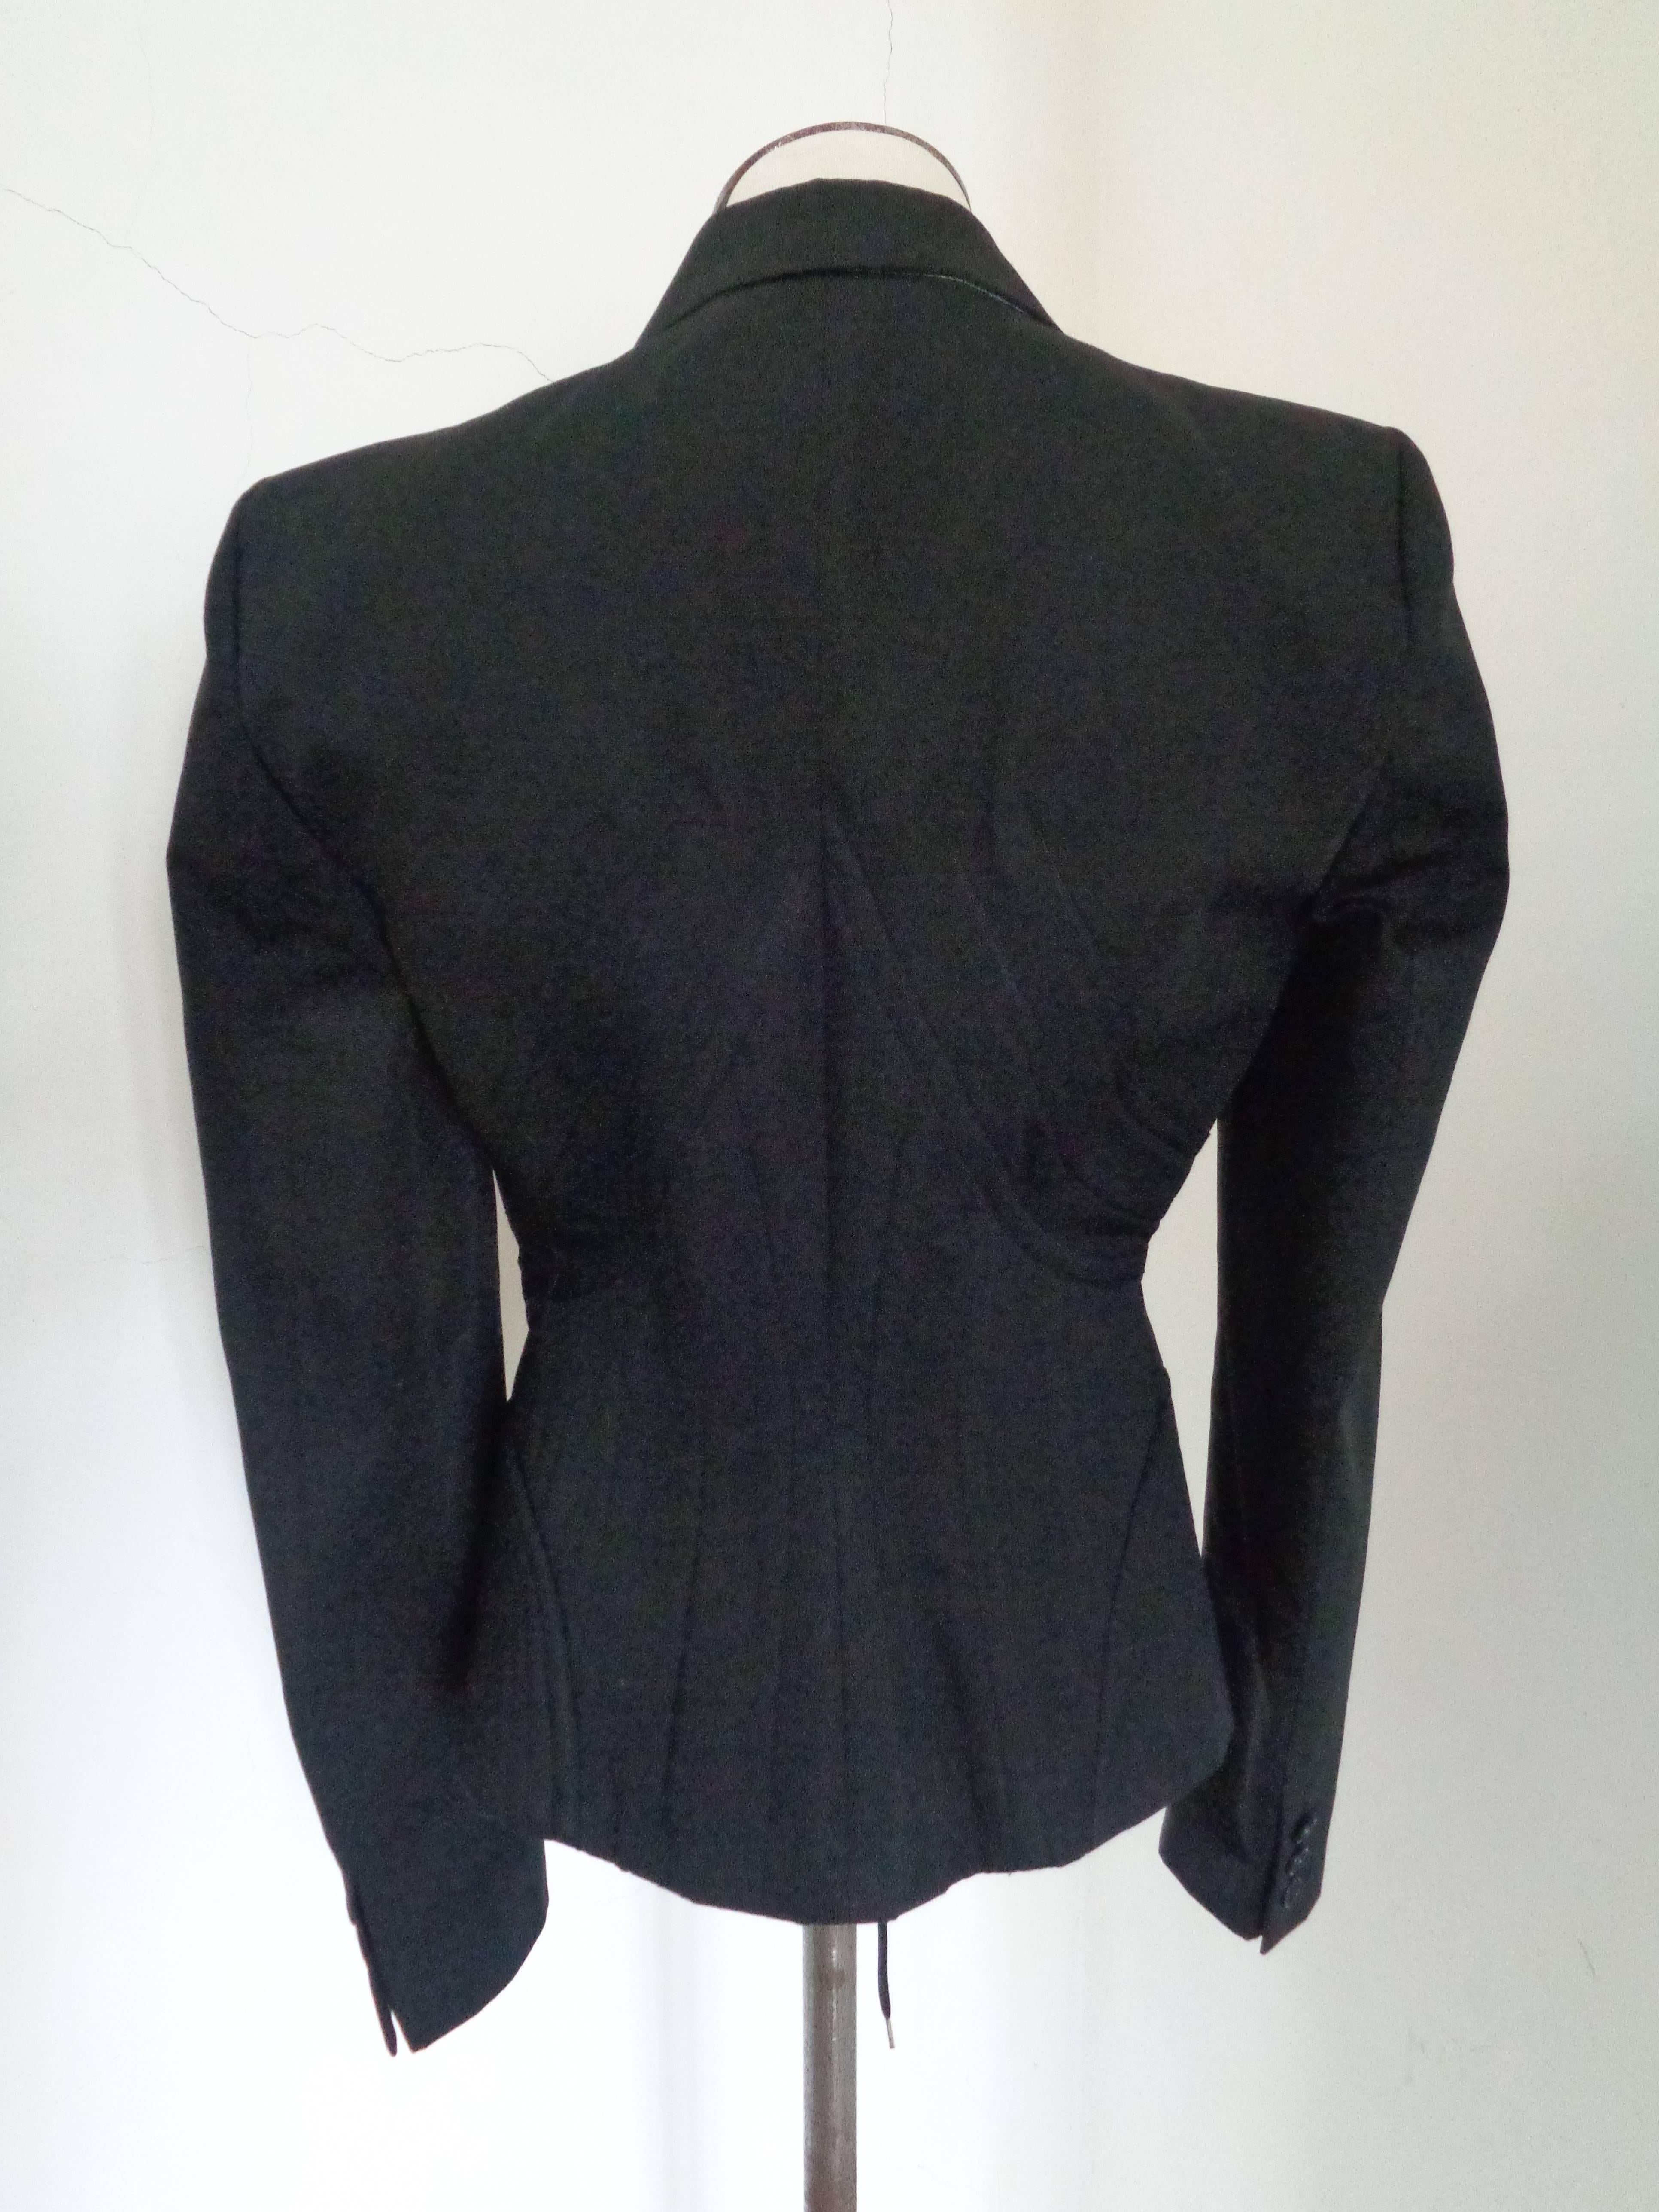 Women's Alexander McQueen black cotton jacket